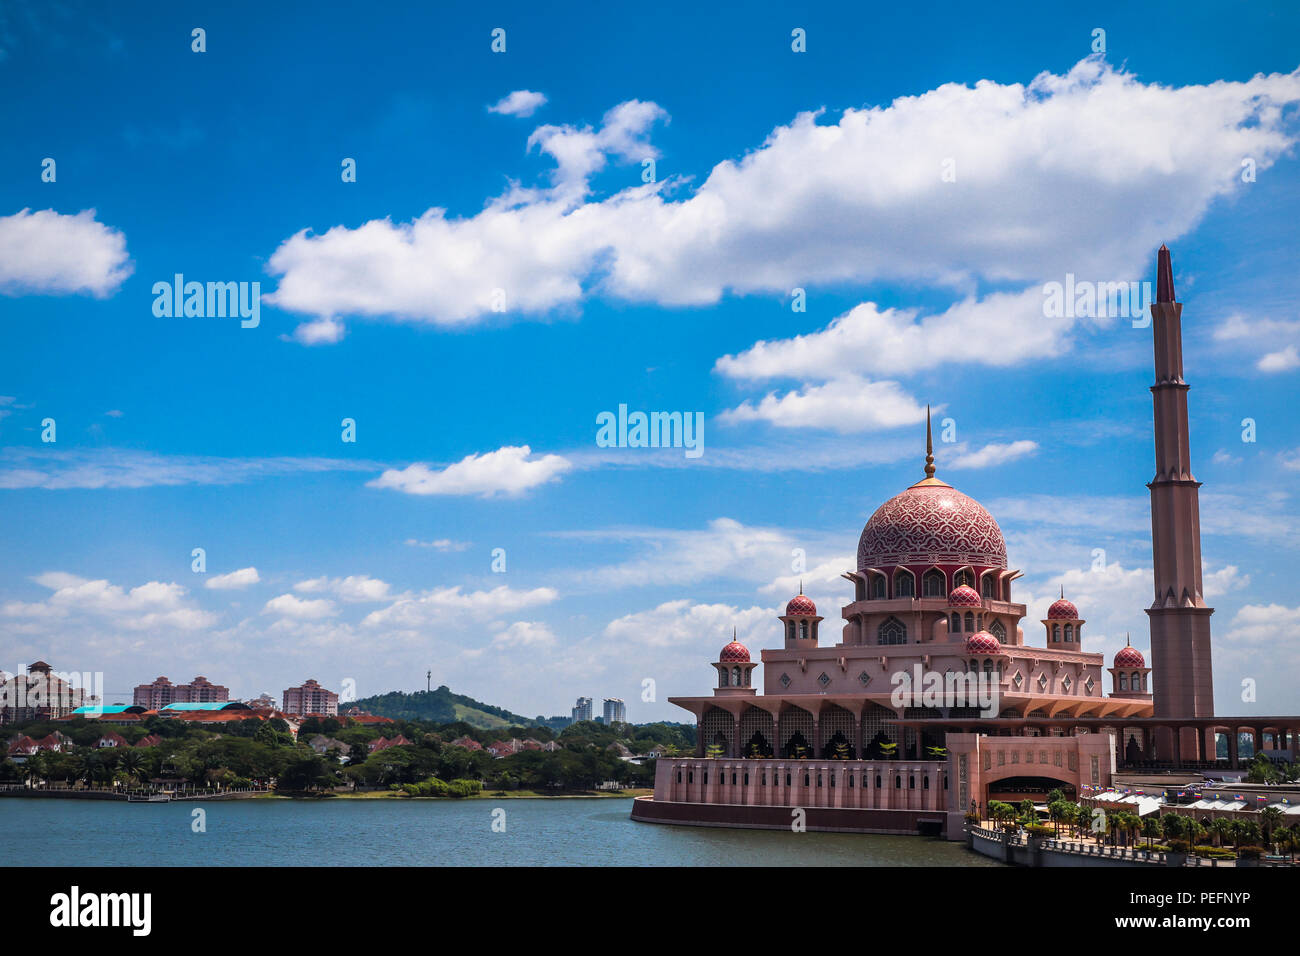 Putra Mosque, Putrajaya, 14. August 2018 - Moderne Islamische Architektur der berühmten Moschee in Malaysia. Stockfoto